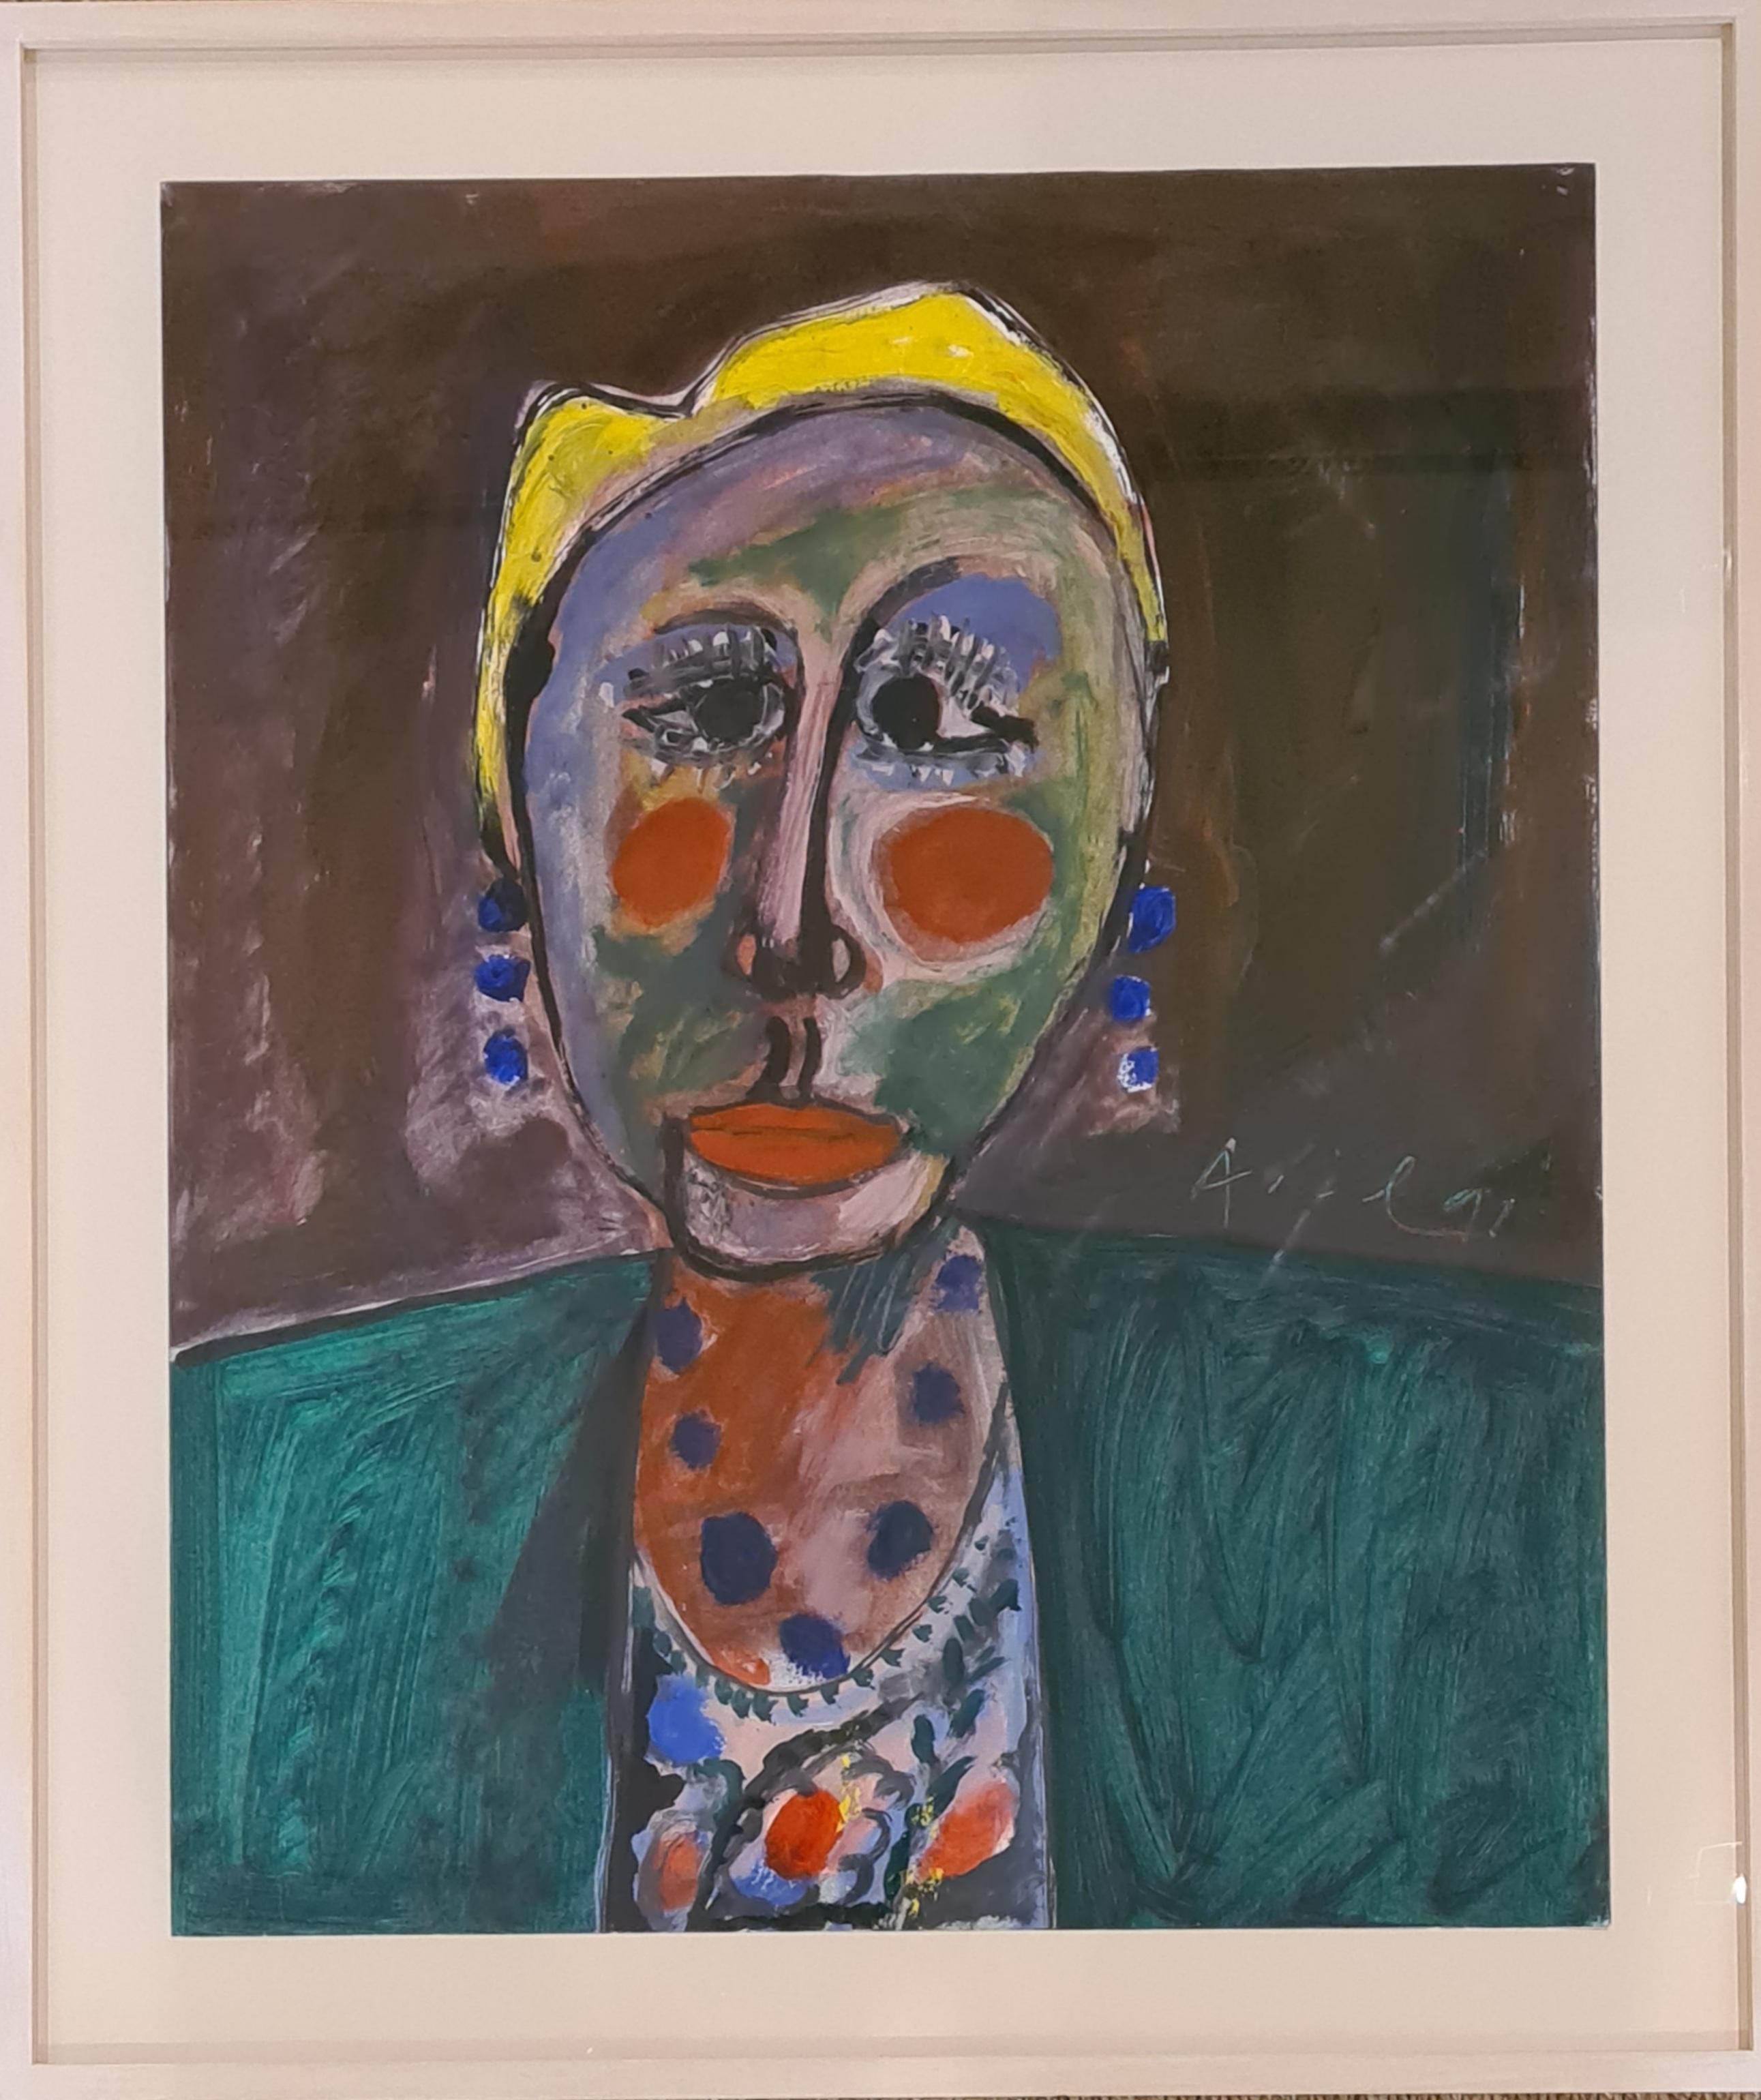  Ein farbenfrohes französisches Porträt von Janine, der Muse des Künstlers Armand Avril. Signiert und datiert Mitte rechts. Präsentiert in einer neuen zeitgenössischen Rahmung unter Glas.

Armand Avril (1926) ist ein bedeutender französischer